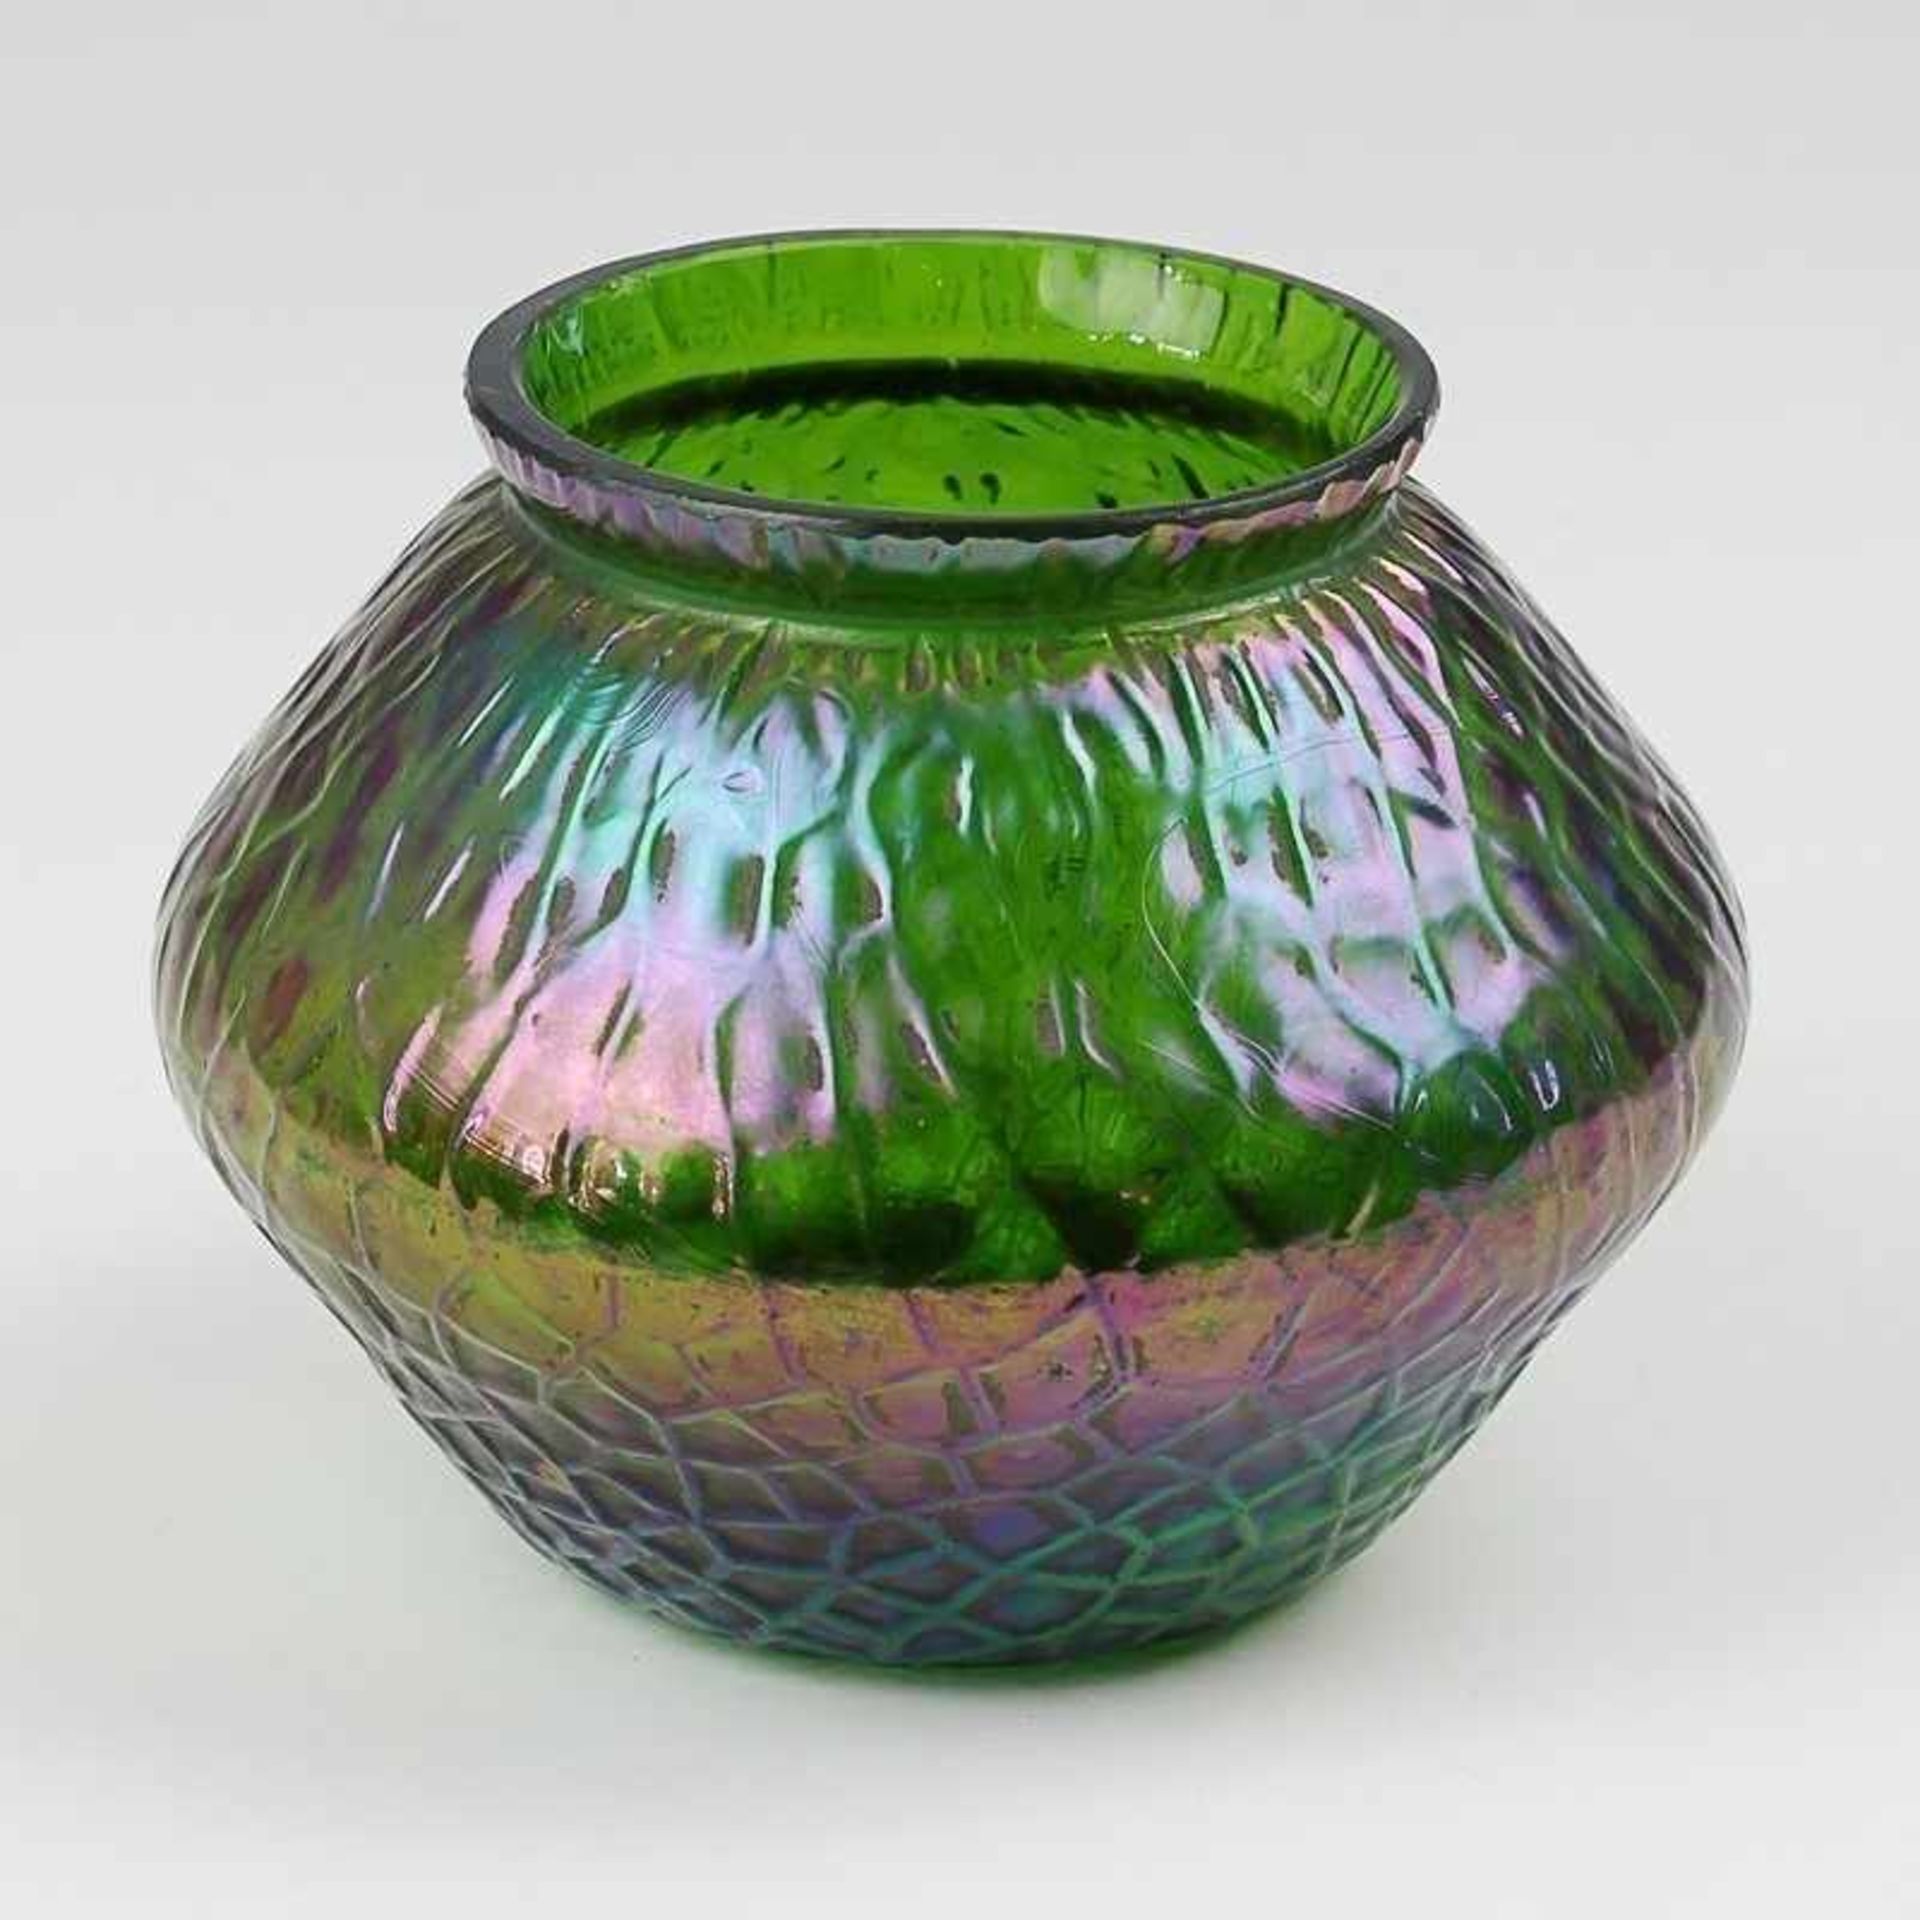 Loetz - Vase um 1910/20, wohl Loetz-Umkreis, grünes Glas, runder Stand, bauchiger Korpus,